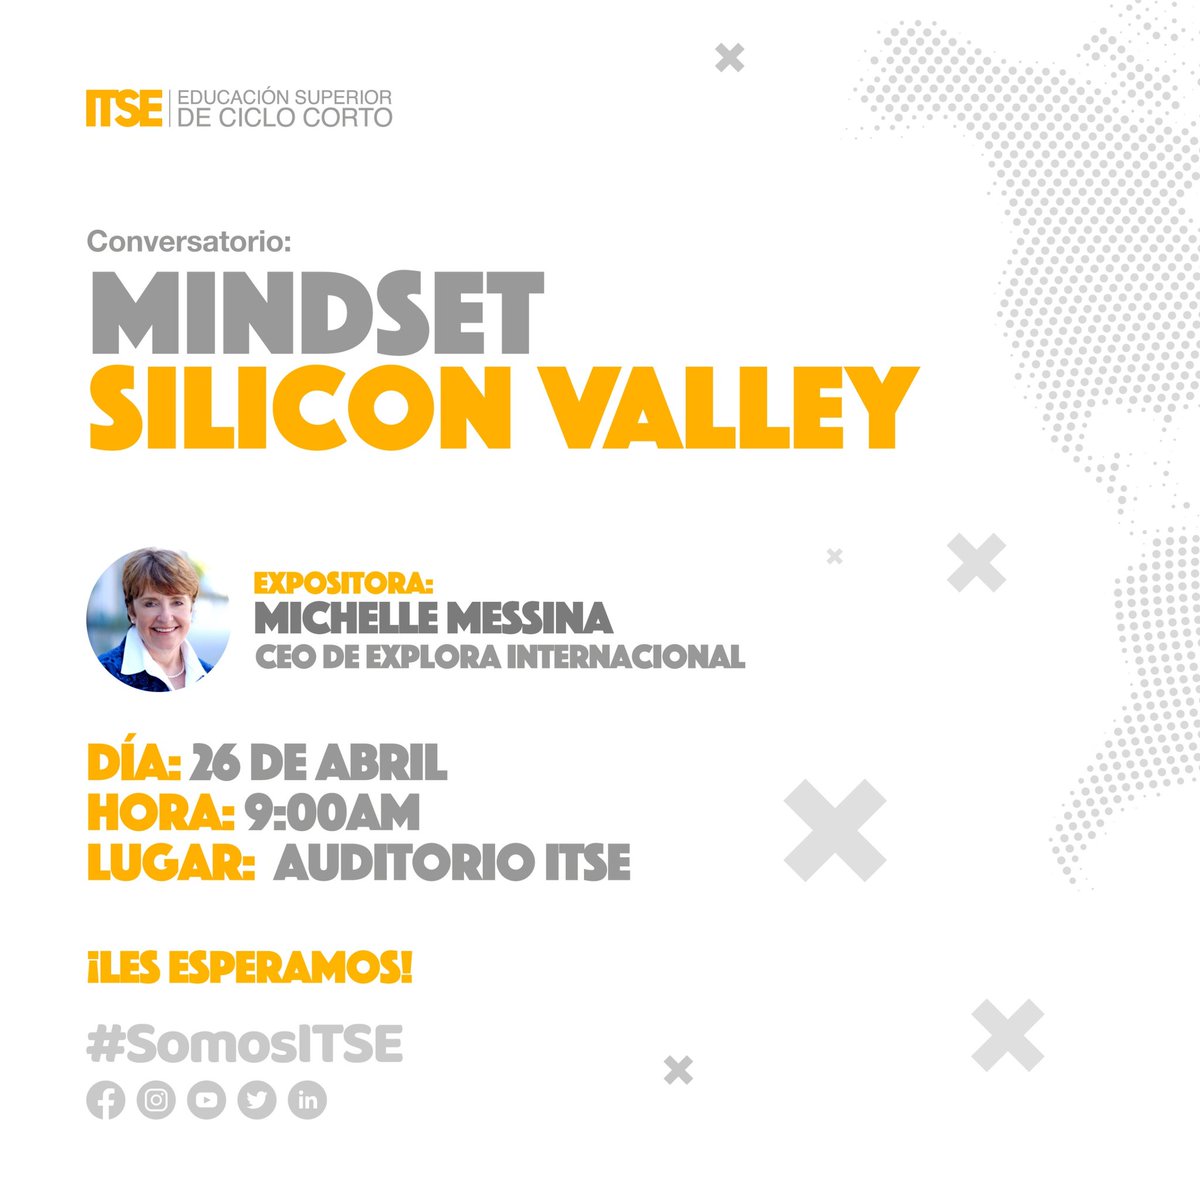 Excelente oportunidad de aprender sobre emprendimiento y la mentalidad de Silicon Valley, de una de las mejores! #MichelleMessina Abierto al público! No te lo pierdas #somosITSE #somosEmprendimiento #CiiECYT